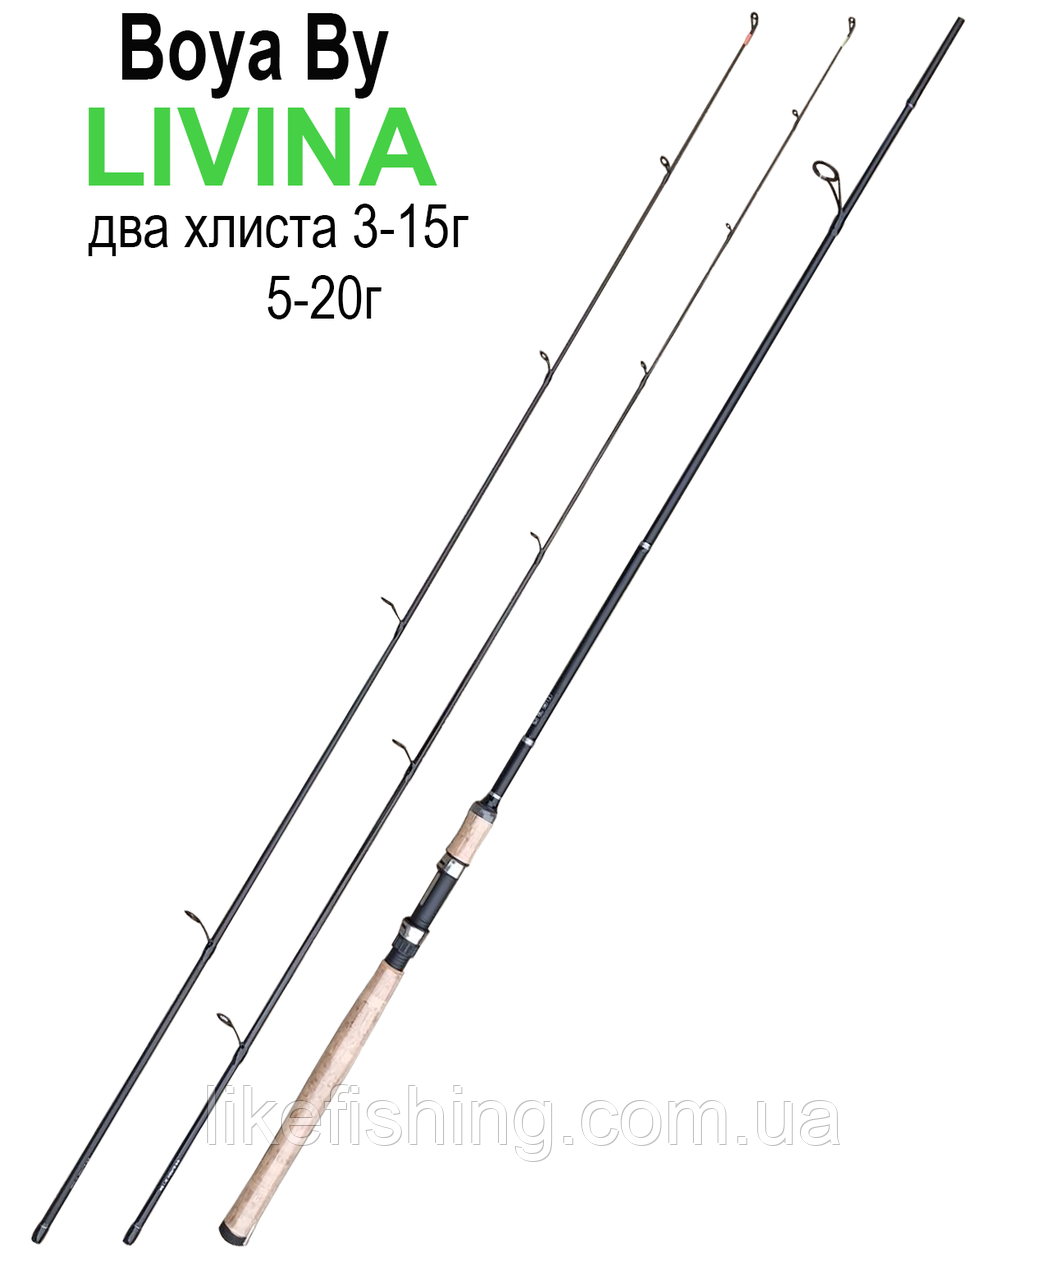 Спінінг 2.1 м два хлиста тест 3-15 і 5-20 г Livina Boya By